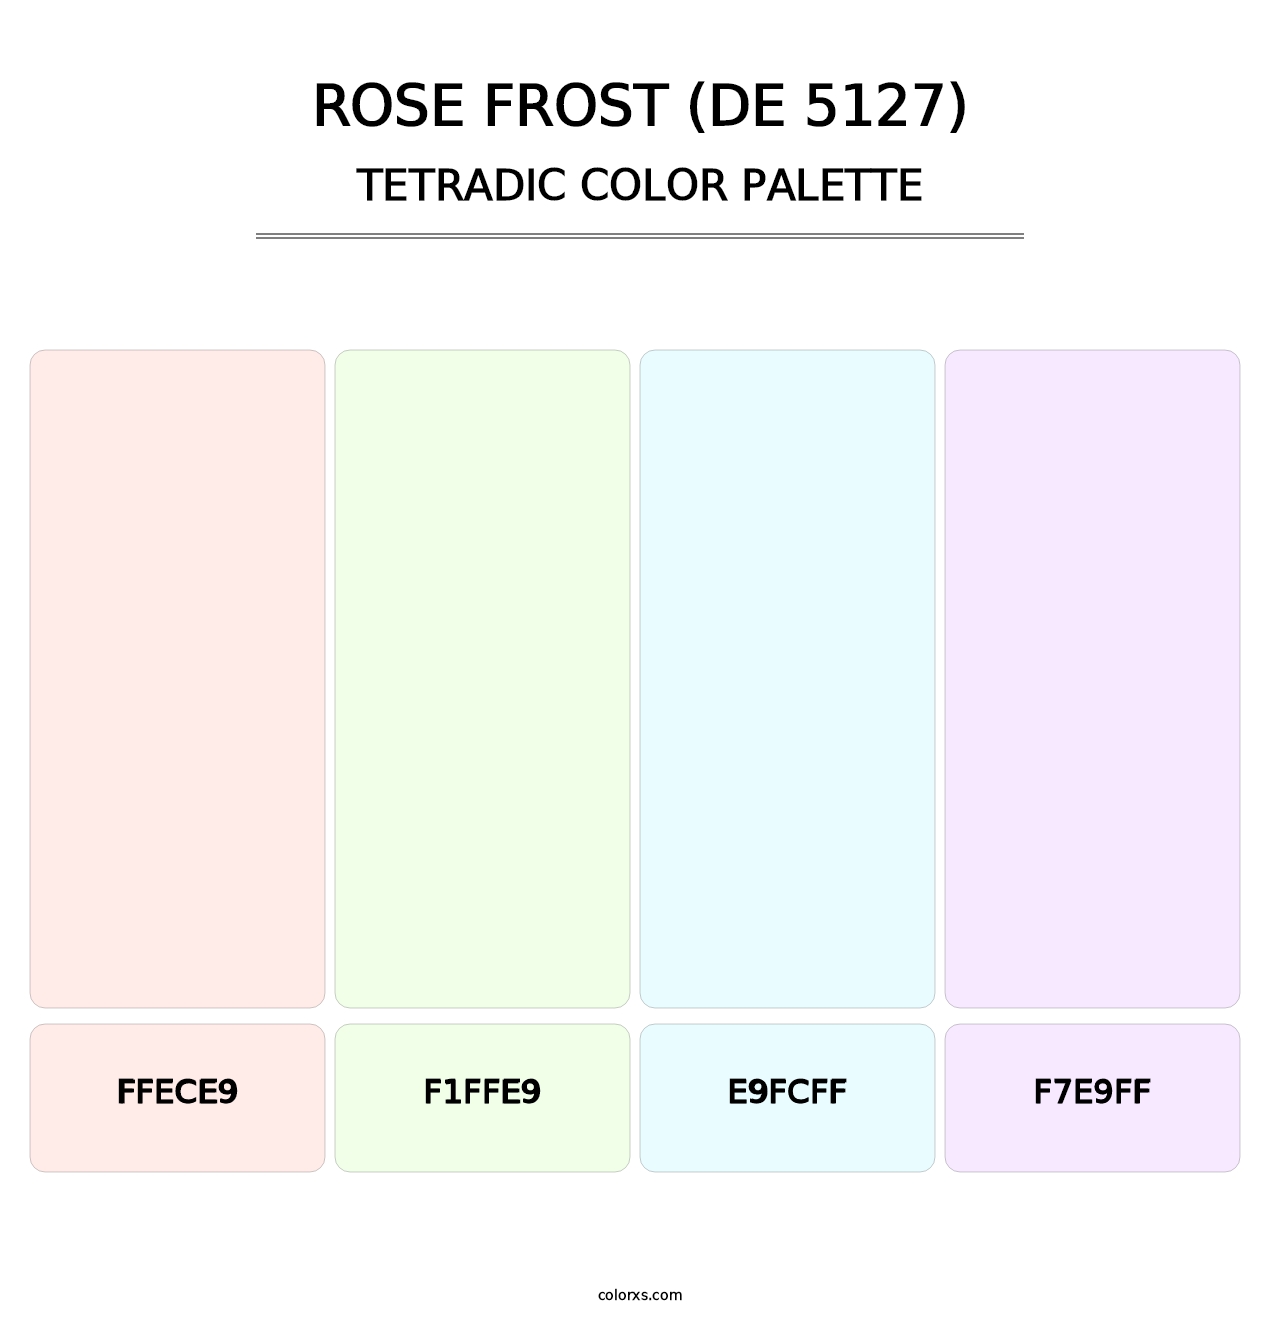 Rose Frost (DE 5127) - Tetradic Color Palette